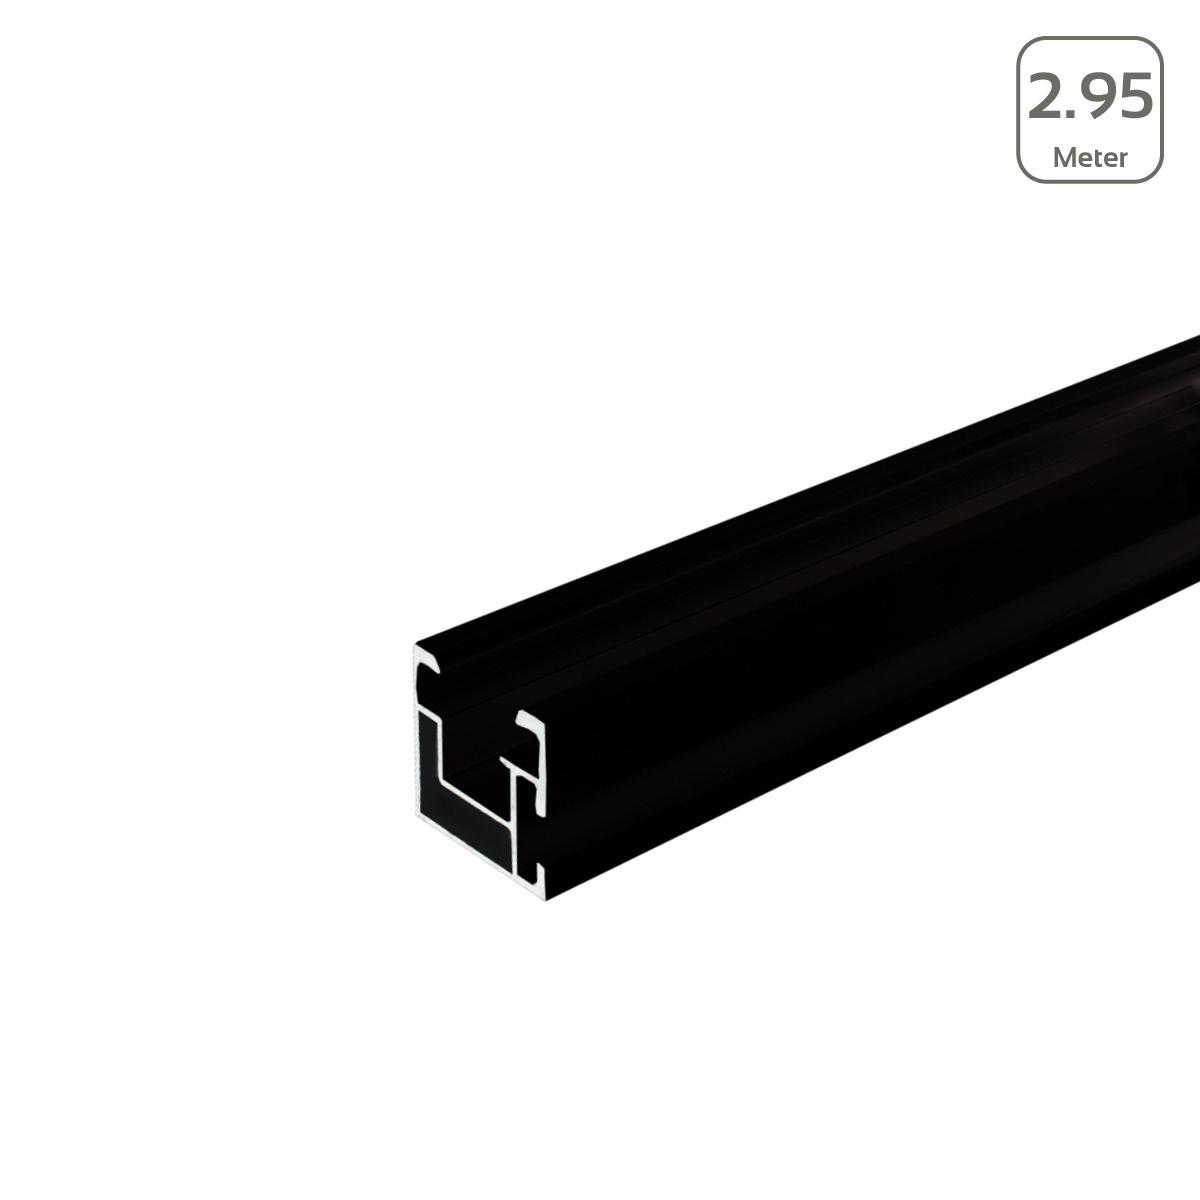 Avanti Profil schwarz eloxiert mit seitlicher Anbindung/Hammerkopfschr. M10 - Länge: 2,95 Meter - MwSt: 0% NUR für Privatkunden